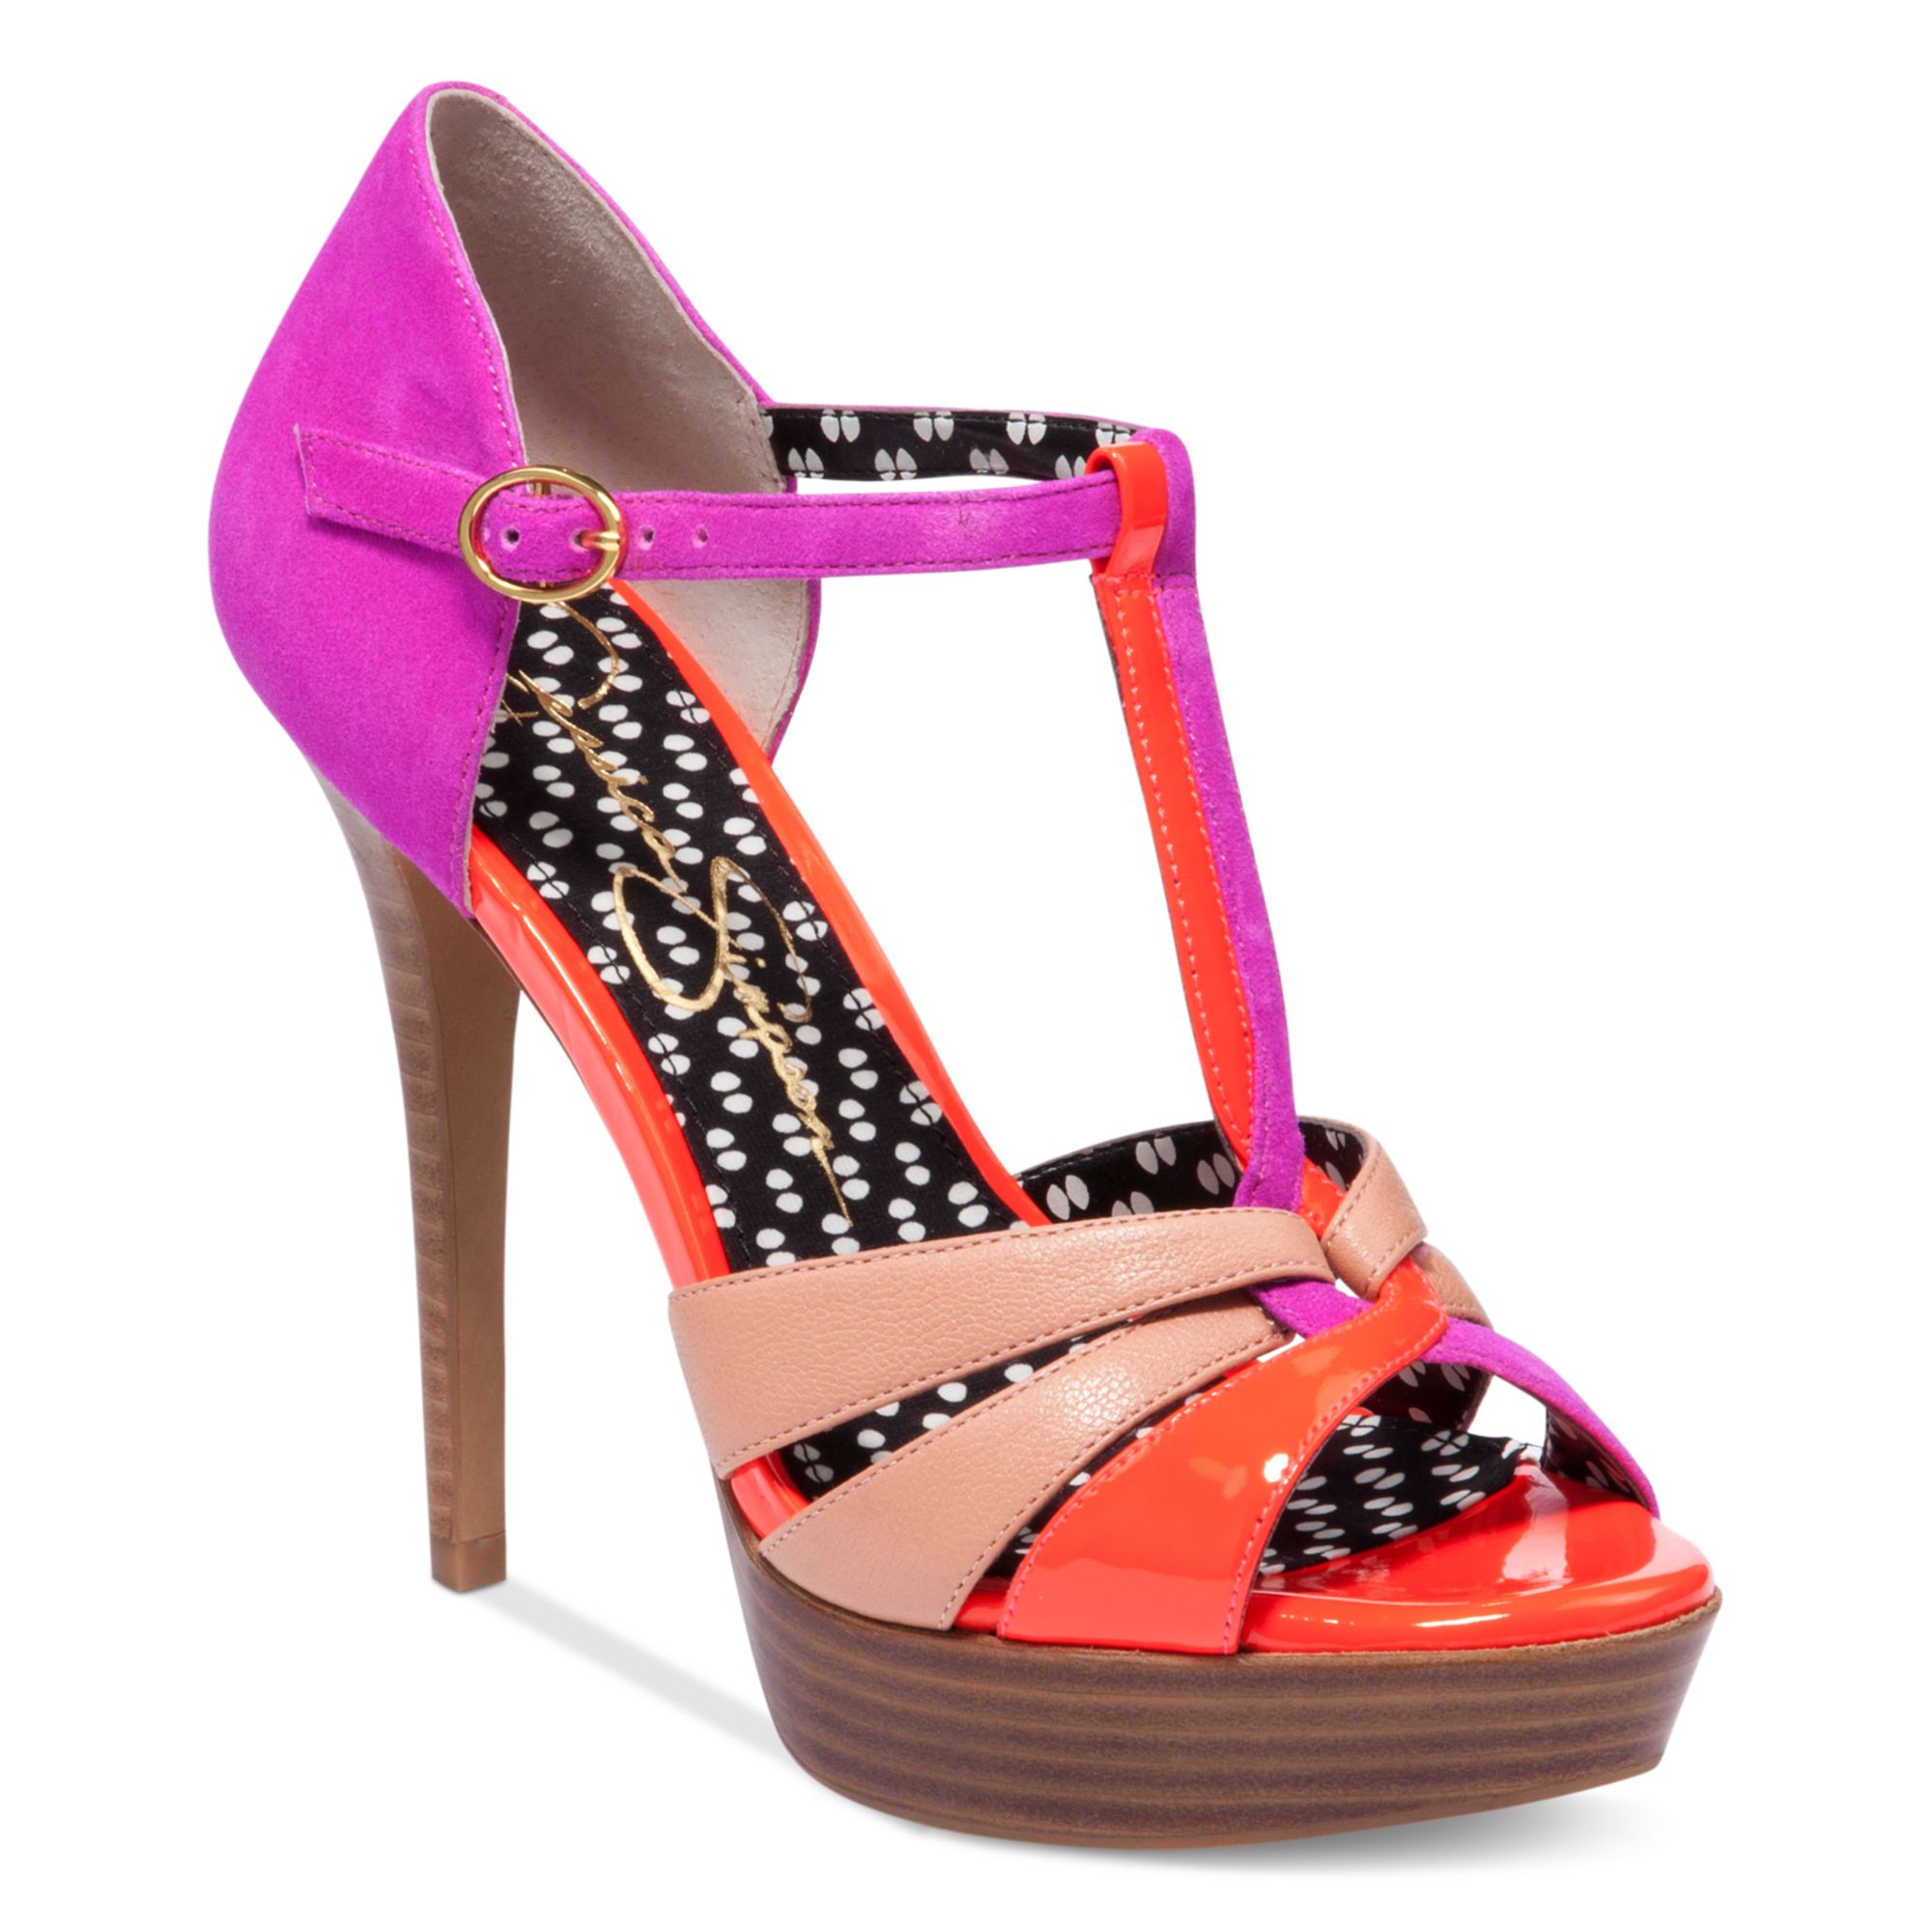 Jessica Simpson Bentley Platform Sandals in Pink (Hot Pink Combo) | Lyst